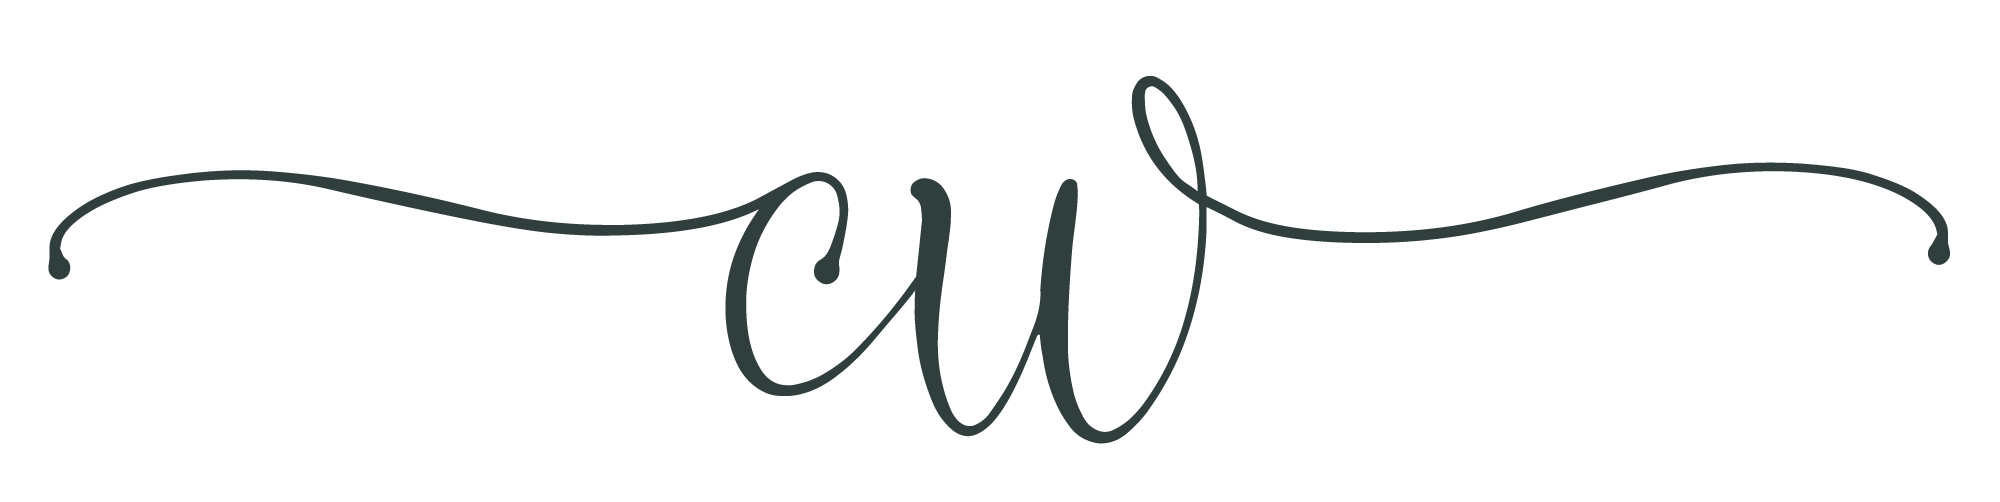 Carolyn Witt Design Logo